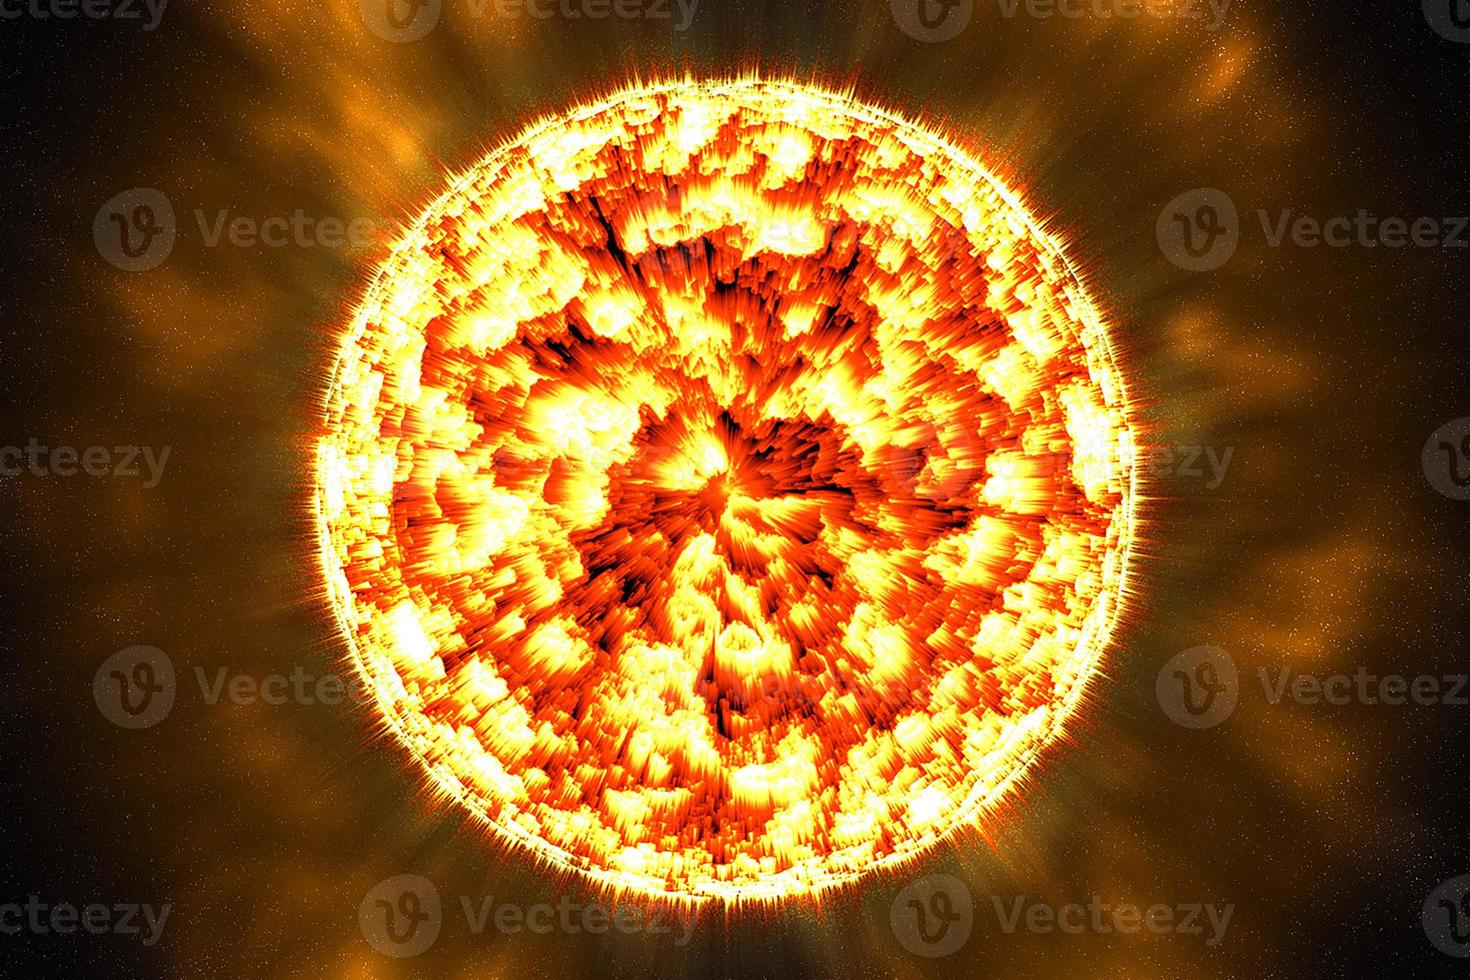 superfície do sol com erupções solares em foto